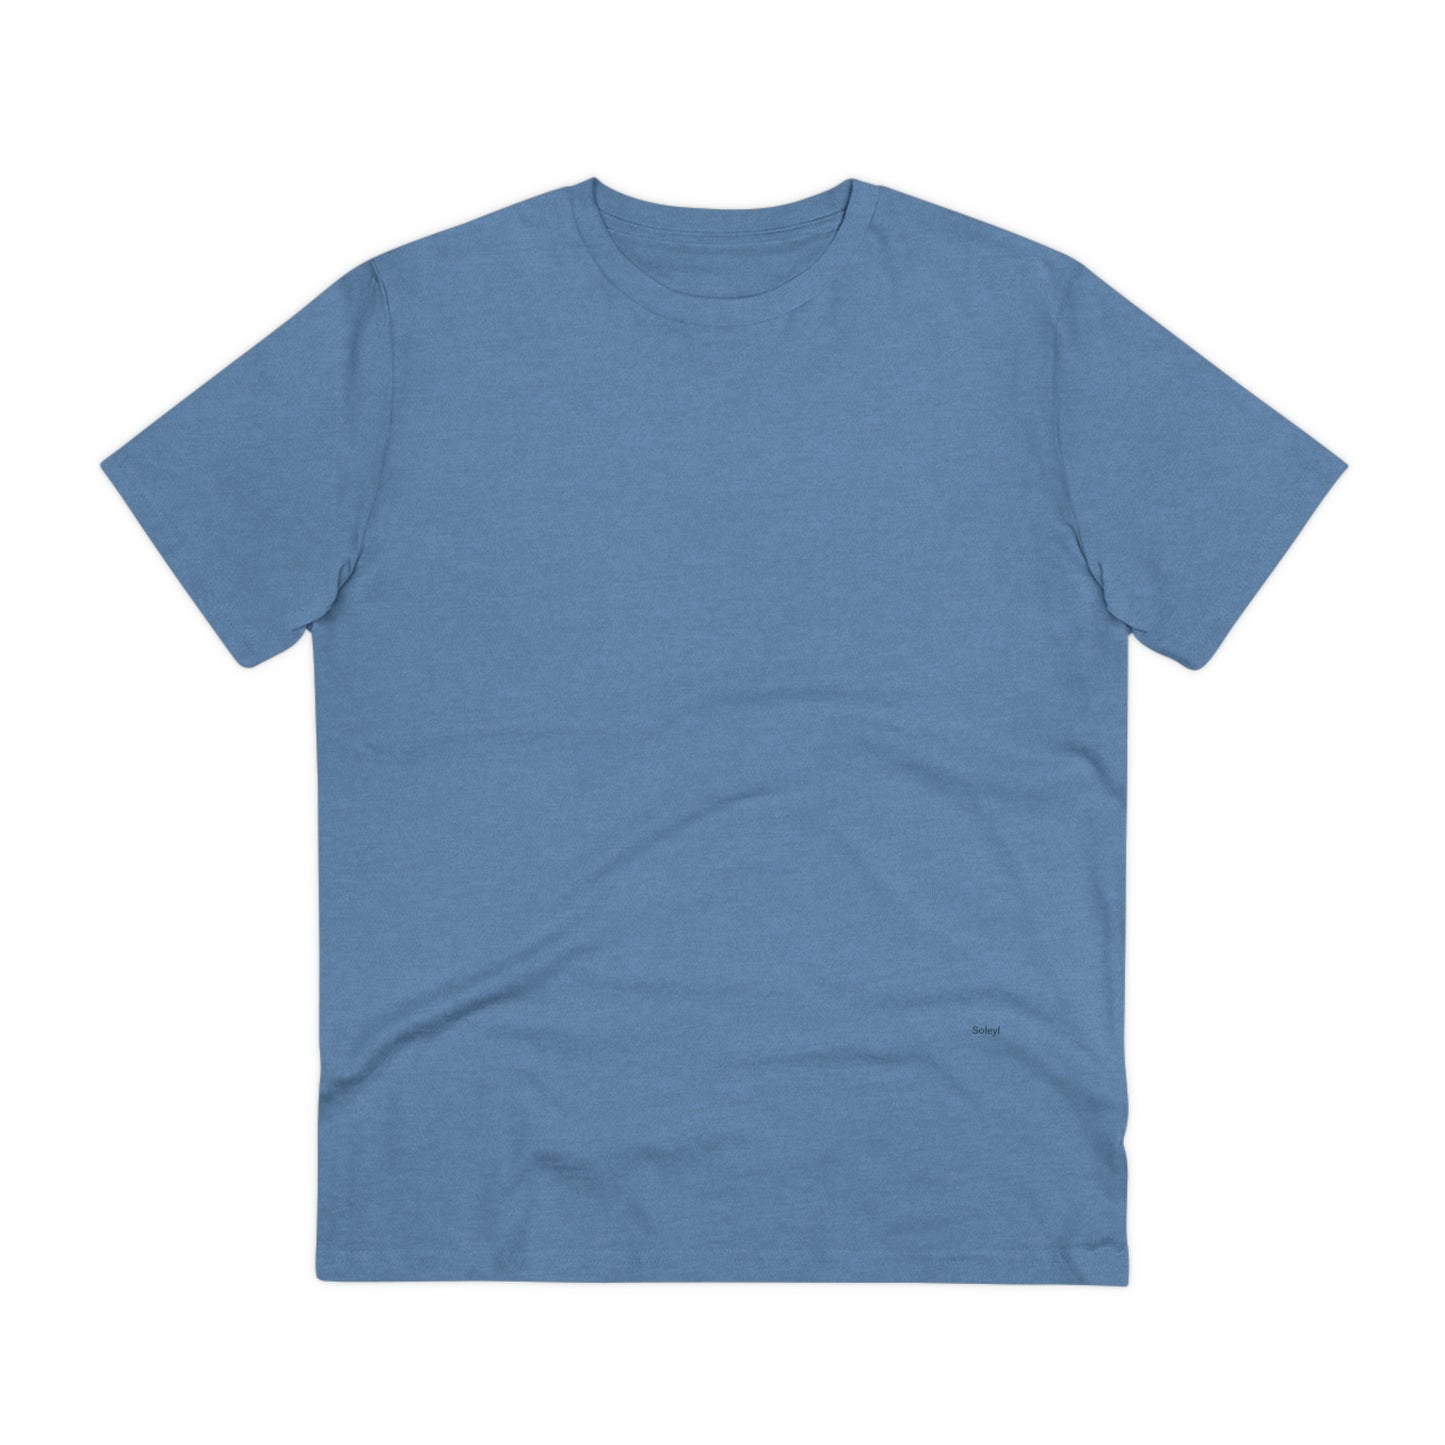 All Colors Plain - Premium Unisex Organic Cotton T-shirt